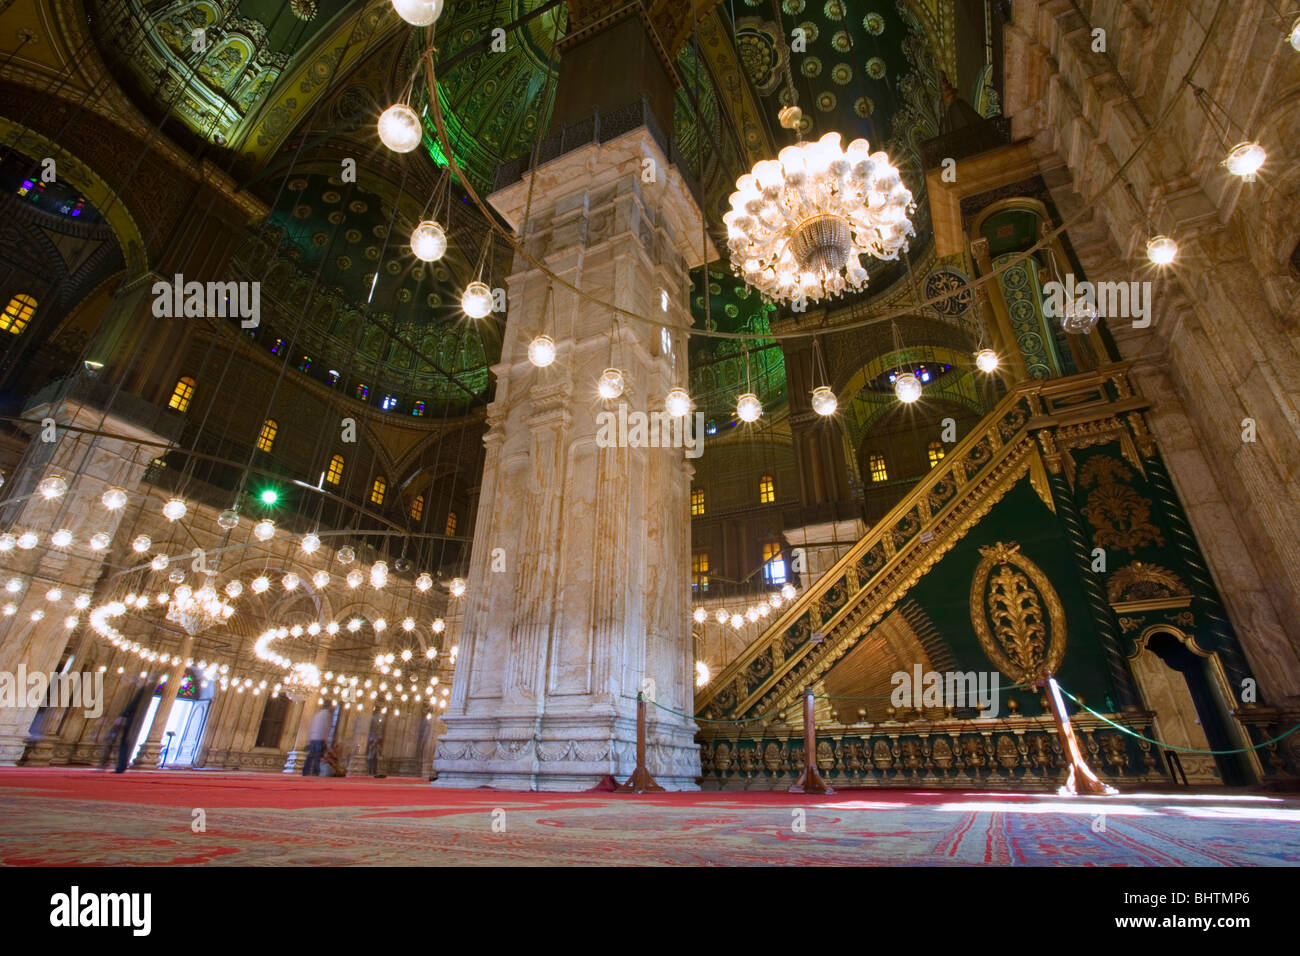 L'intérieur de la mosquée de Mohamed Ali dans la Citadelle de Saladin au Caire, Égypte. Banque D'Images